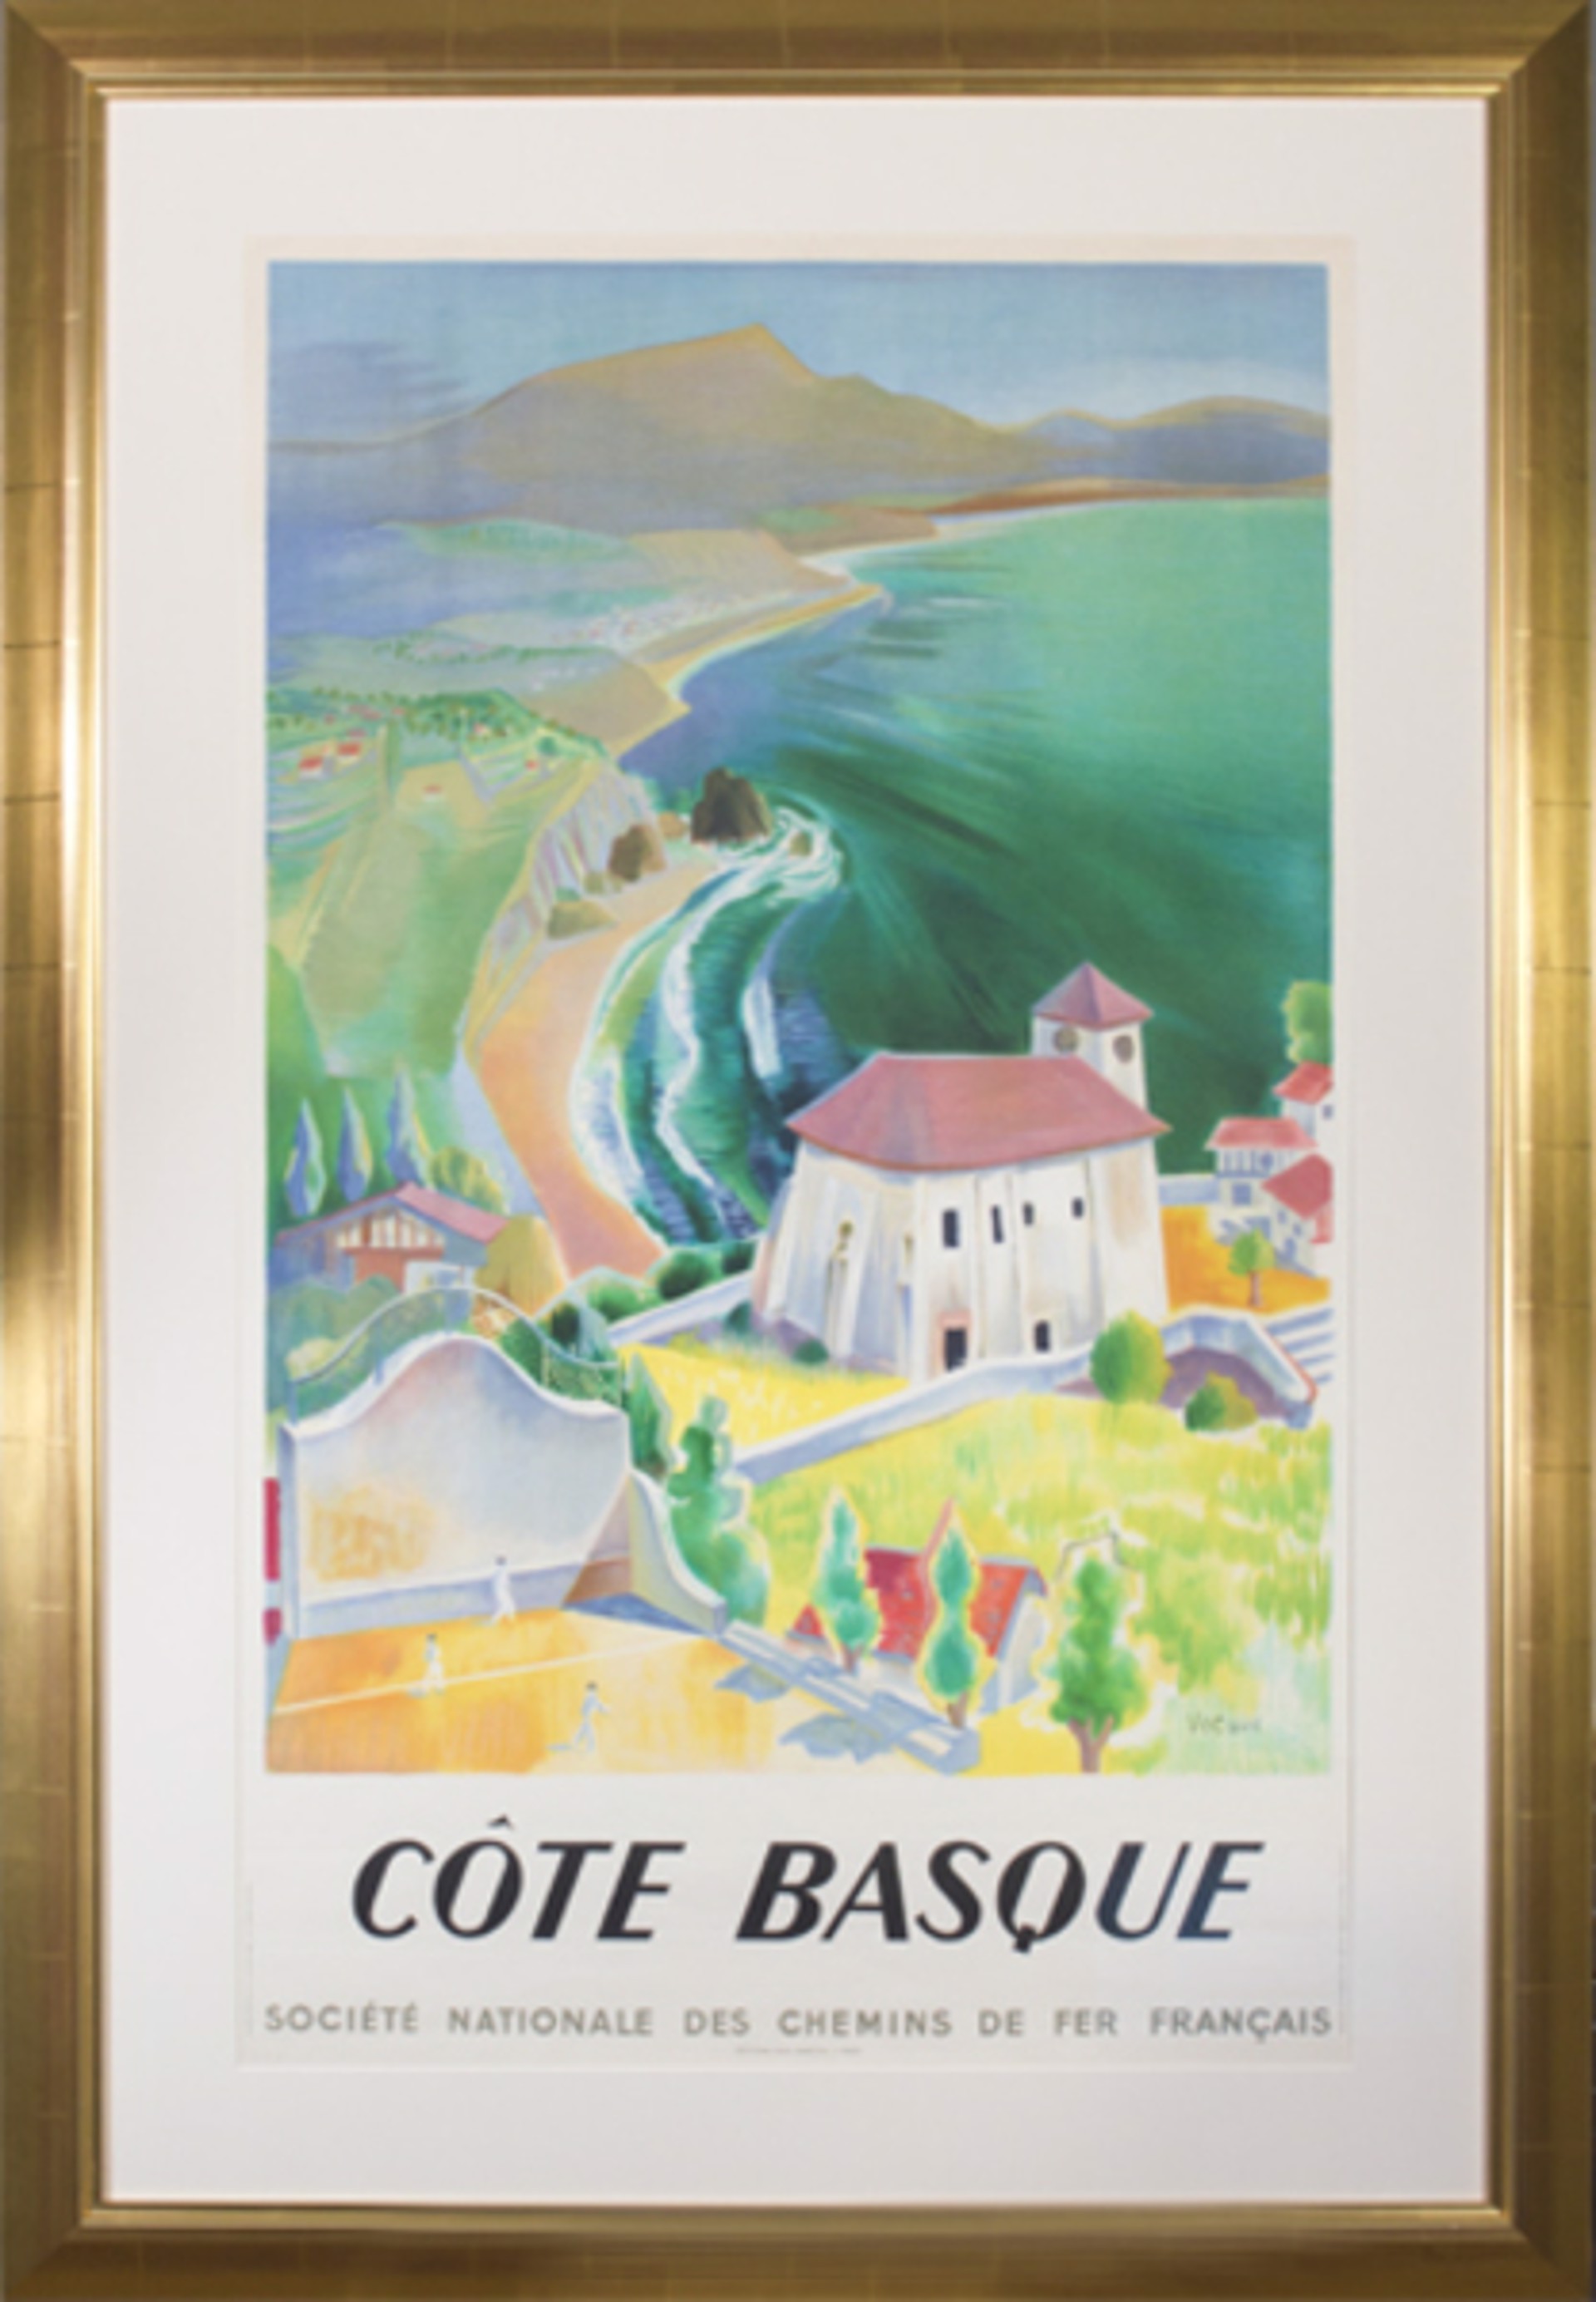 Cote Basque (Societe Nationale des Chemins de Fer Francais) by Vecoux